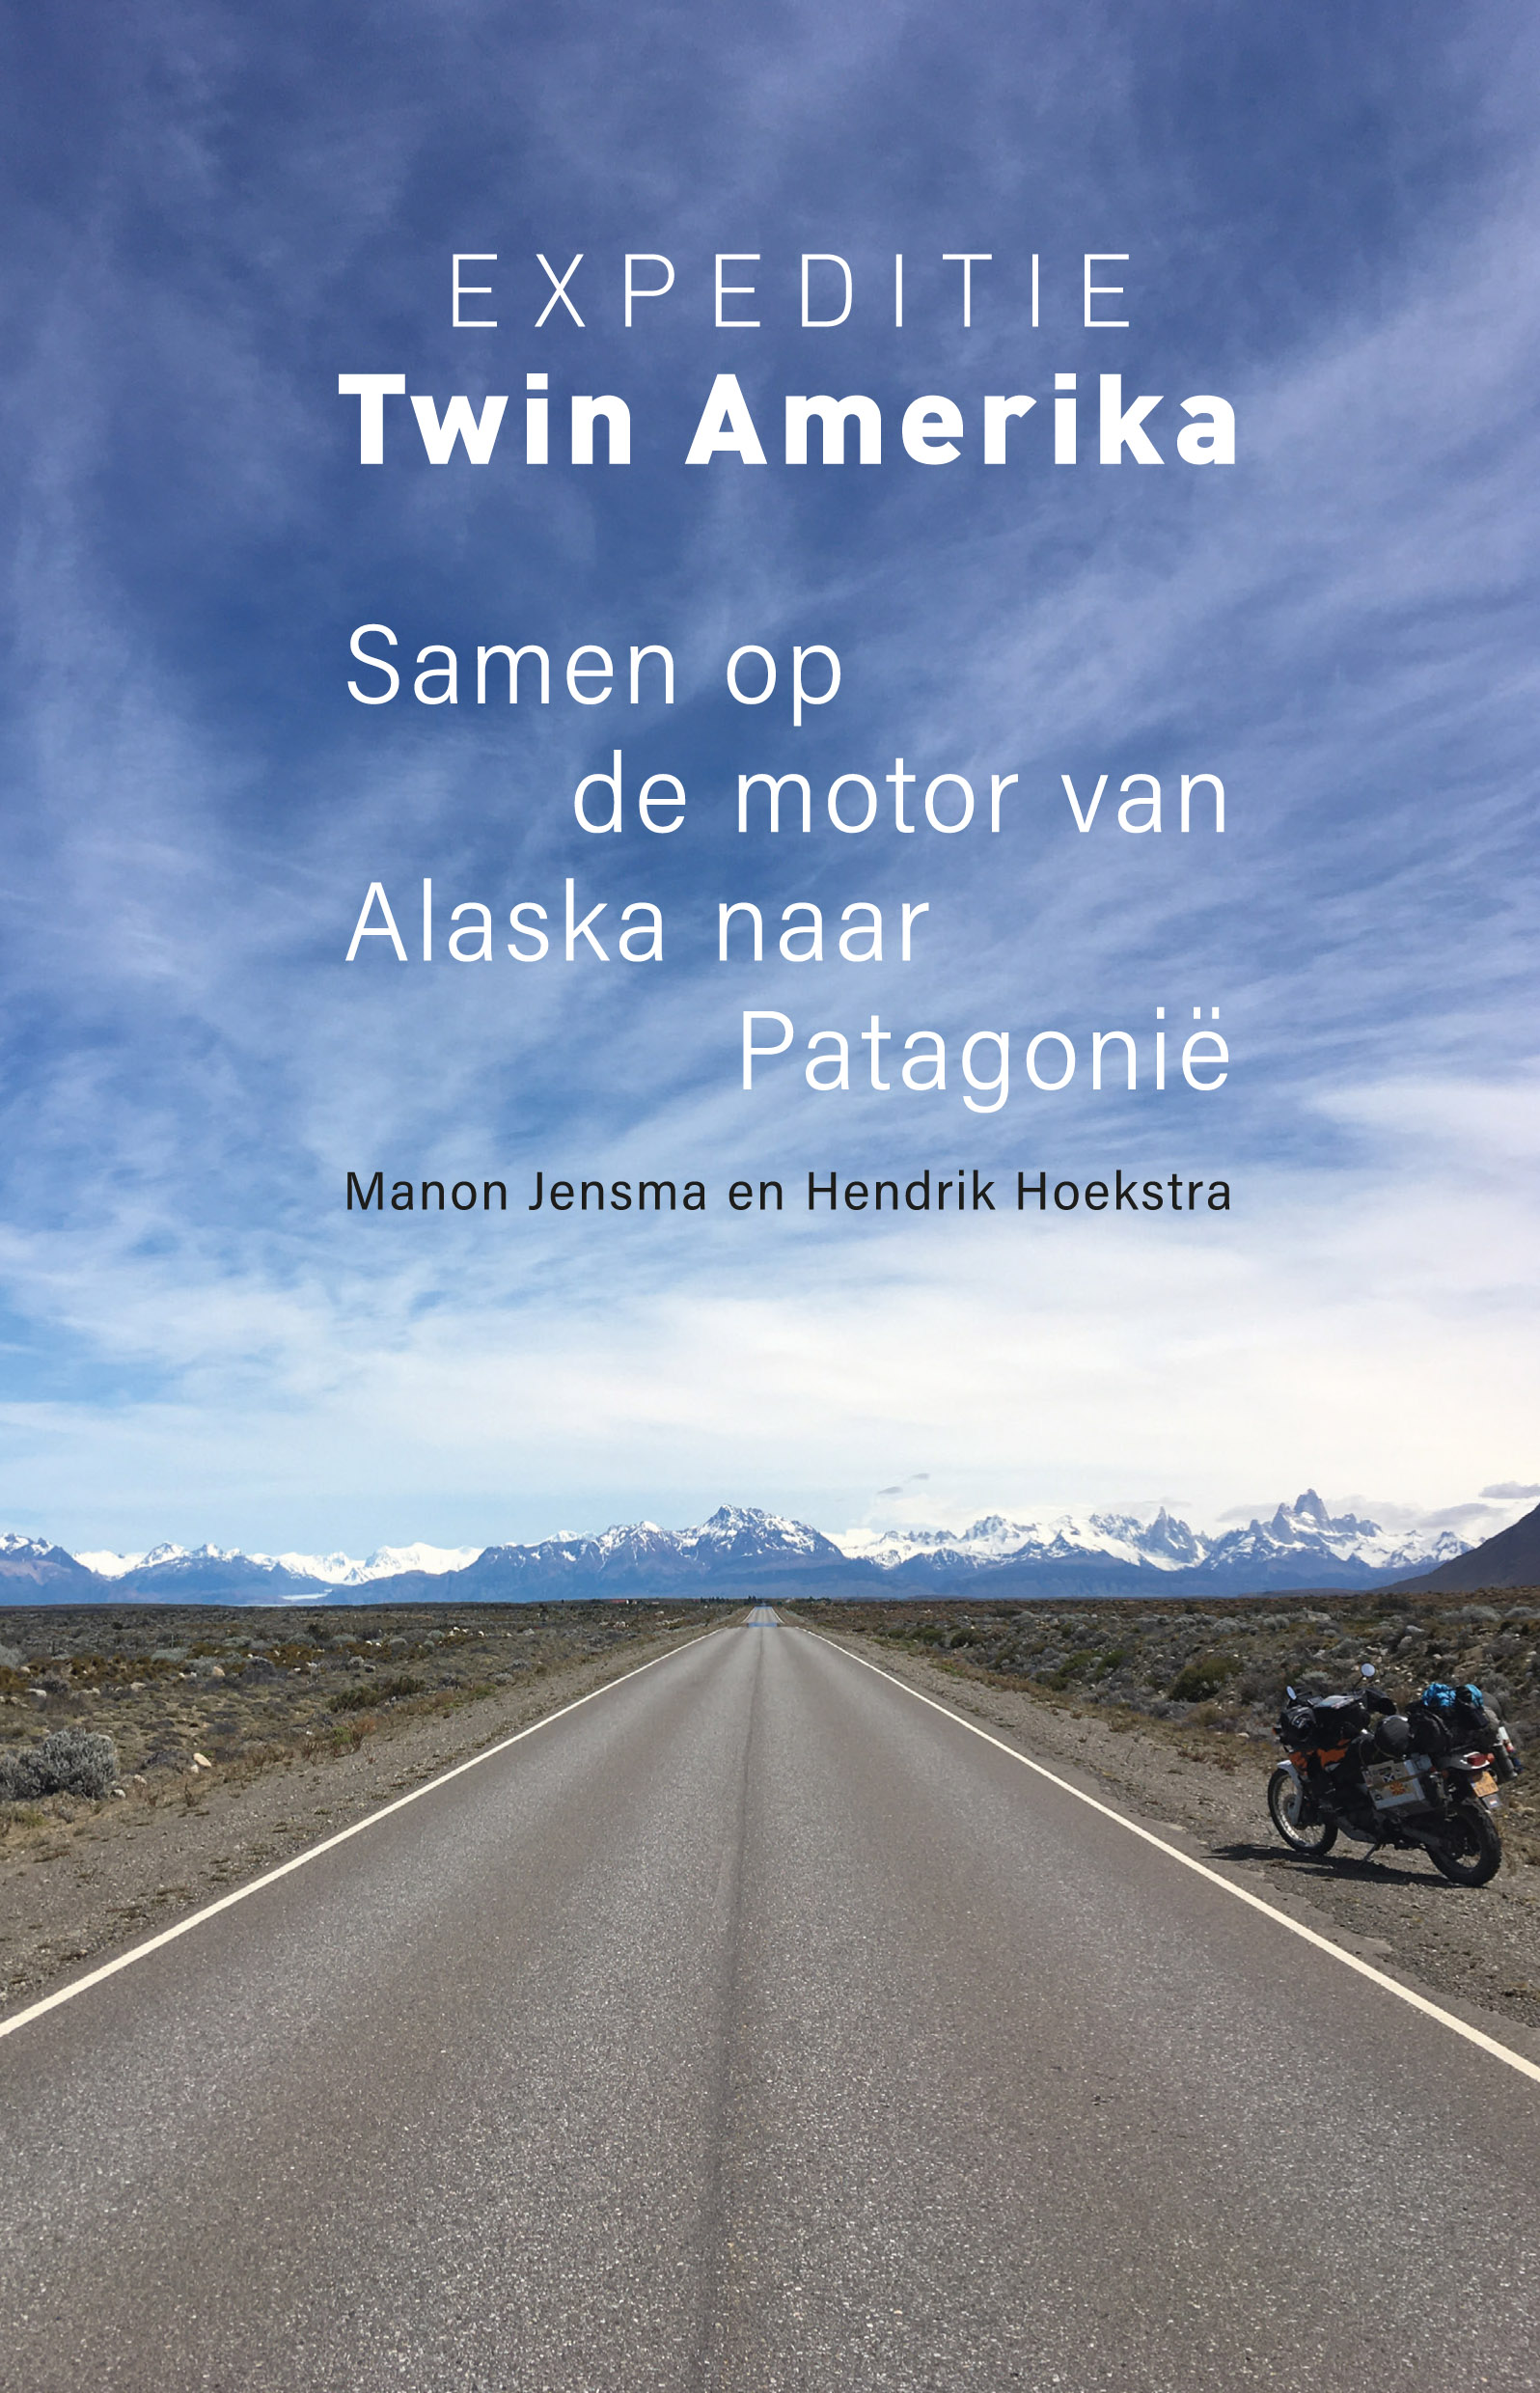 Expeditie Twin Amerika | reisverhaal 9789493170445 Hendrik Hoekstra en Manon Jensma Kleine Uil   Motorsport, Reisverhalen & literatuur Wereld als geheel